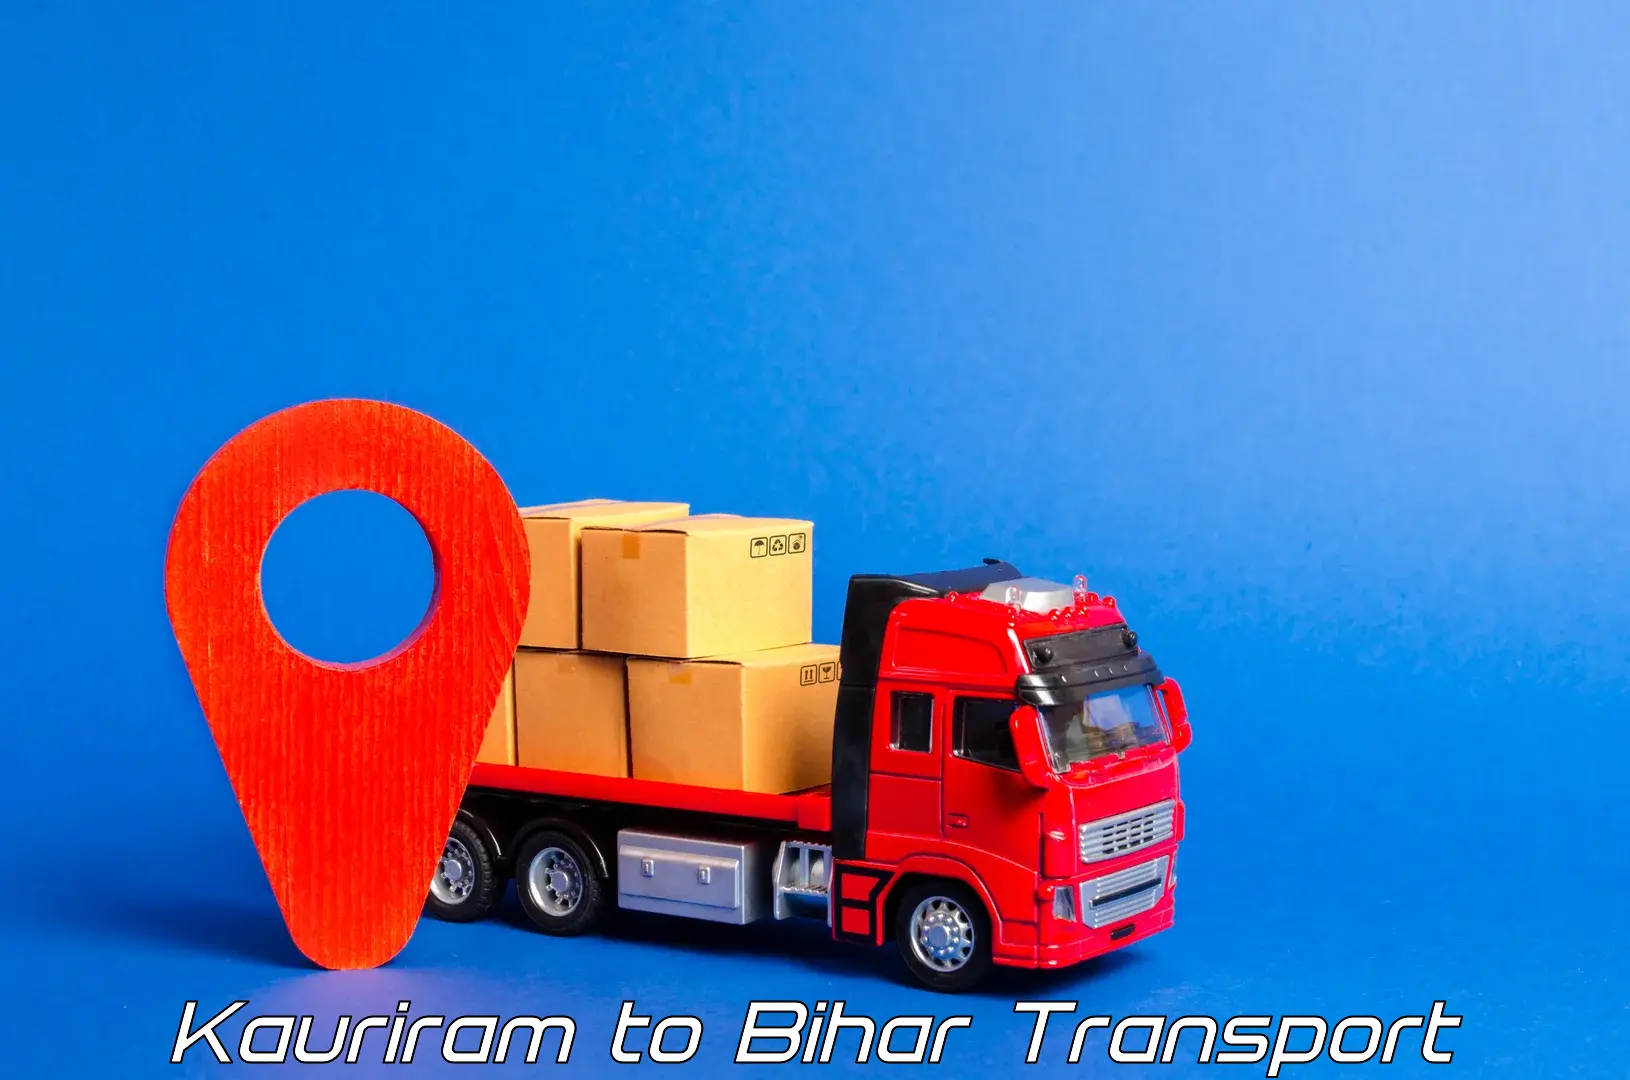 Nearest transport service Kauriram to Bihar